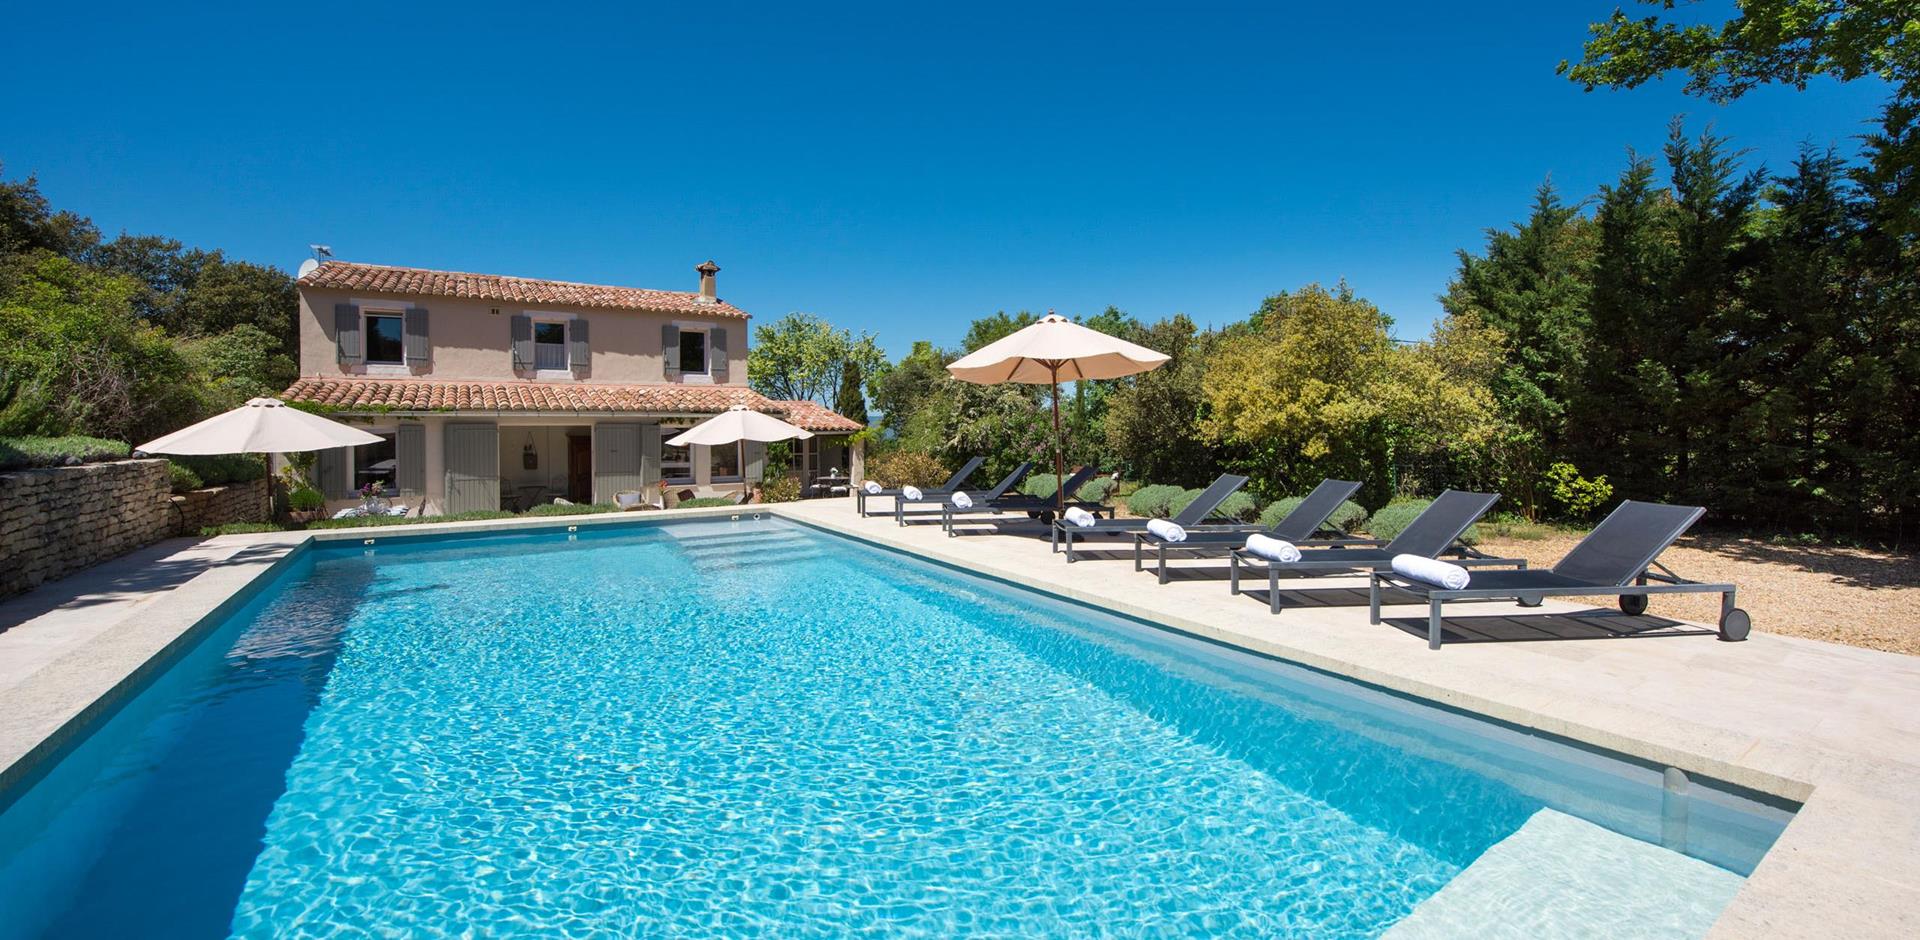 Pool area, La Provencale, Provence.